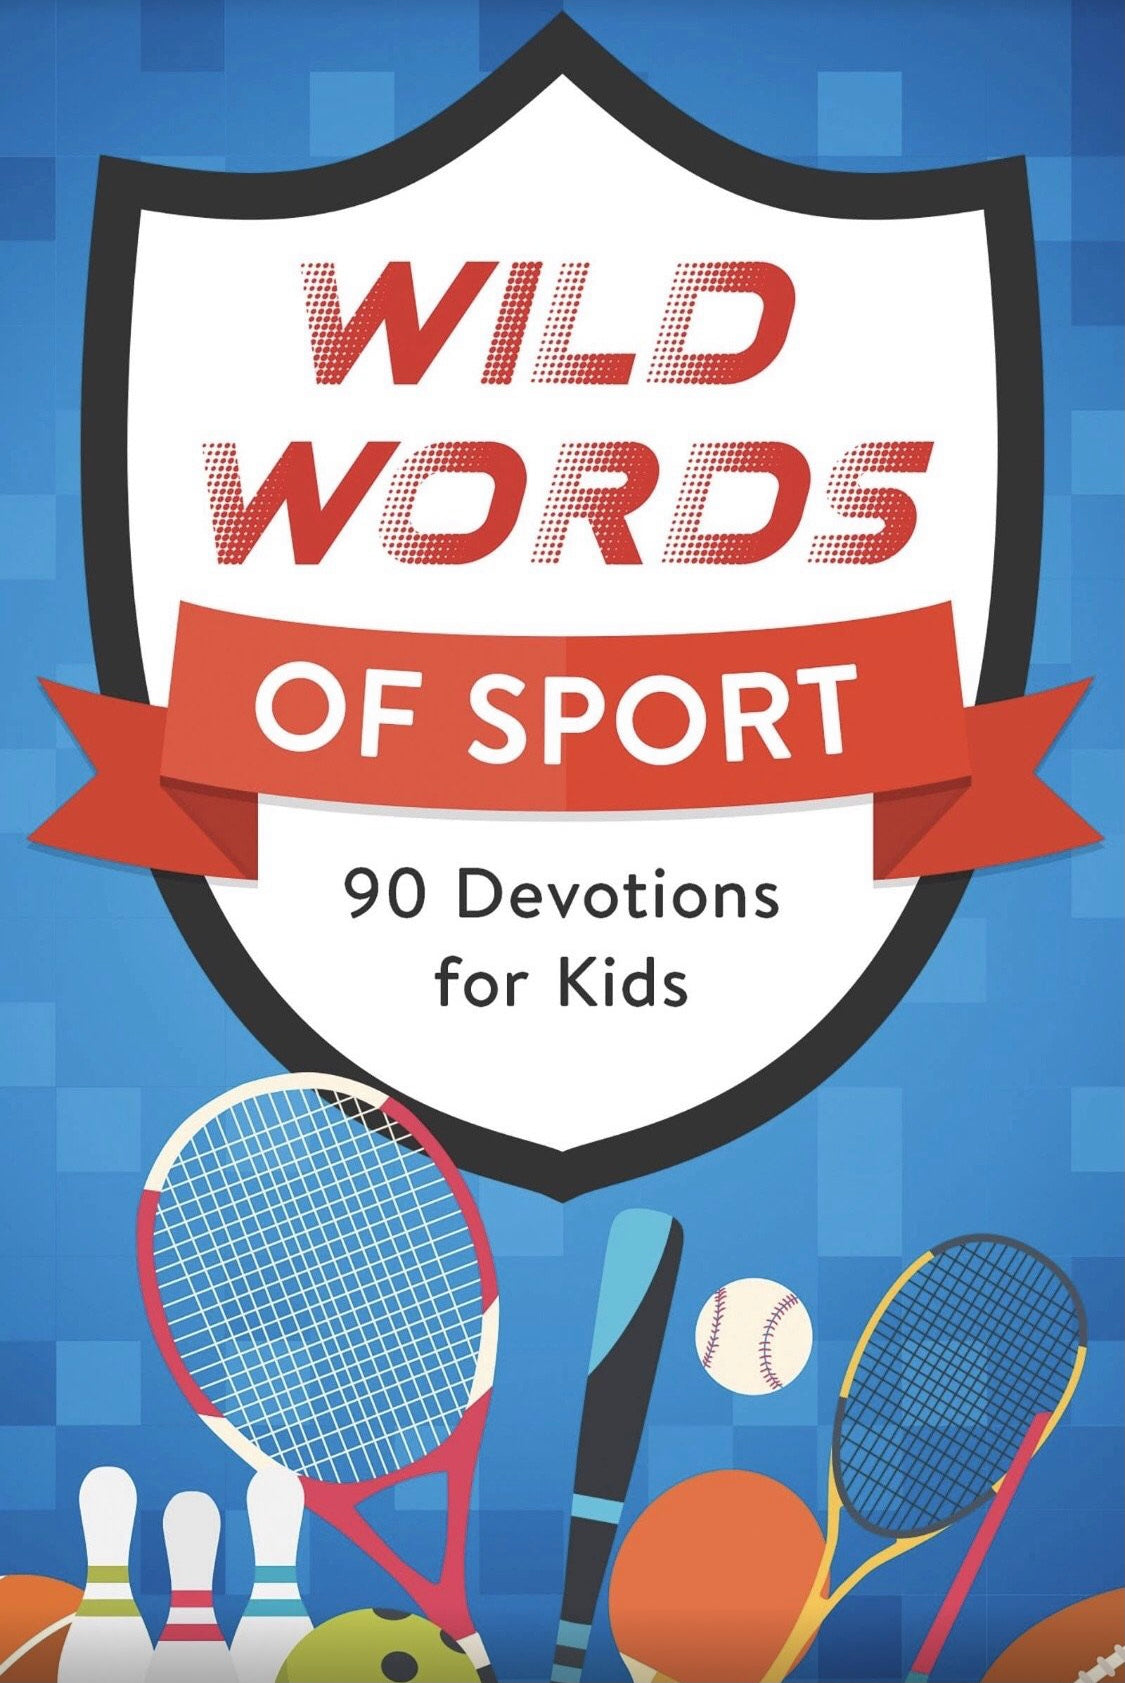 Wild Words of Sport